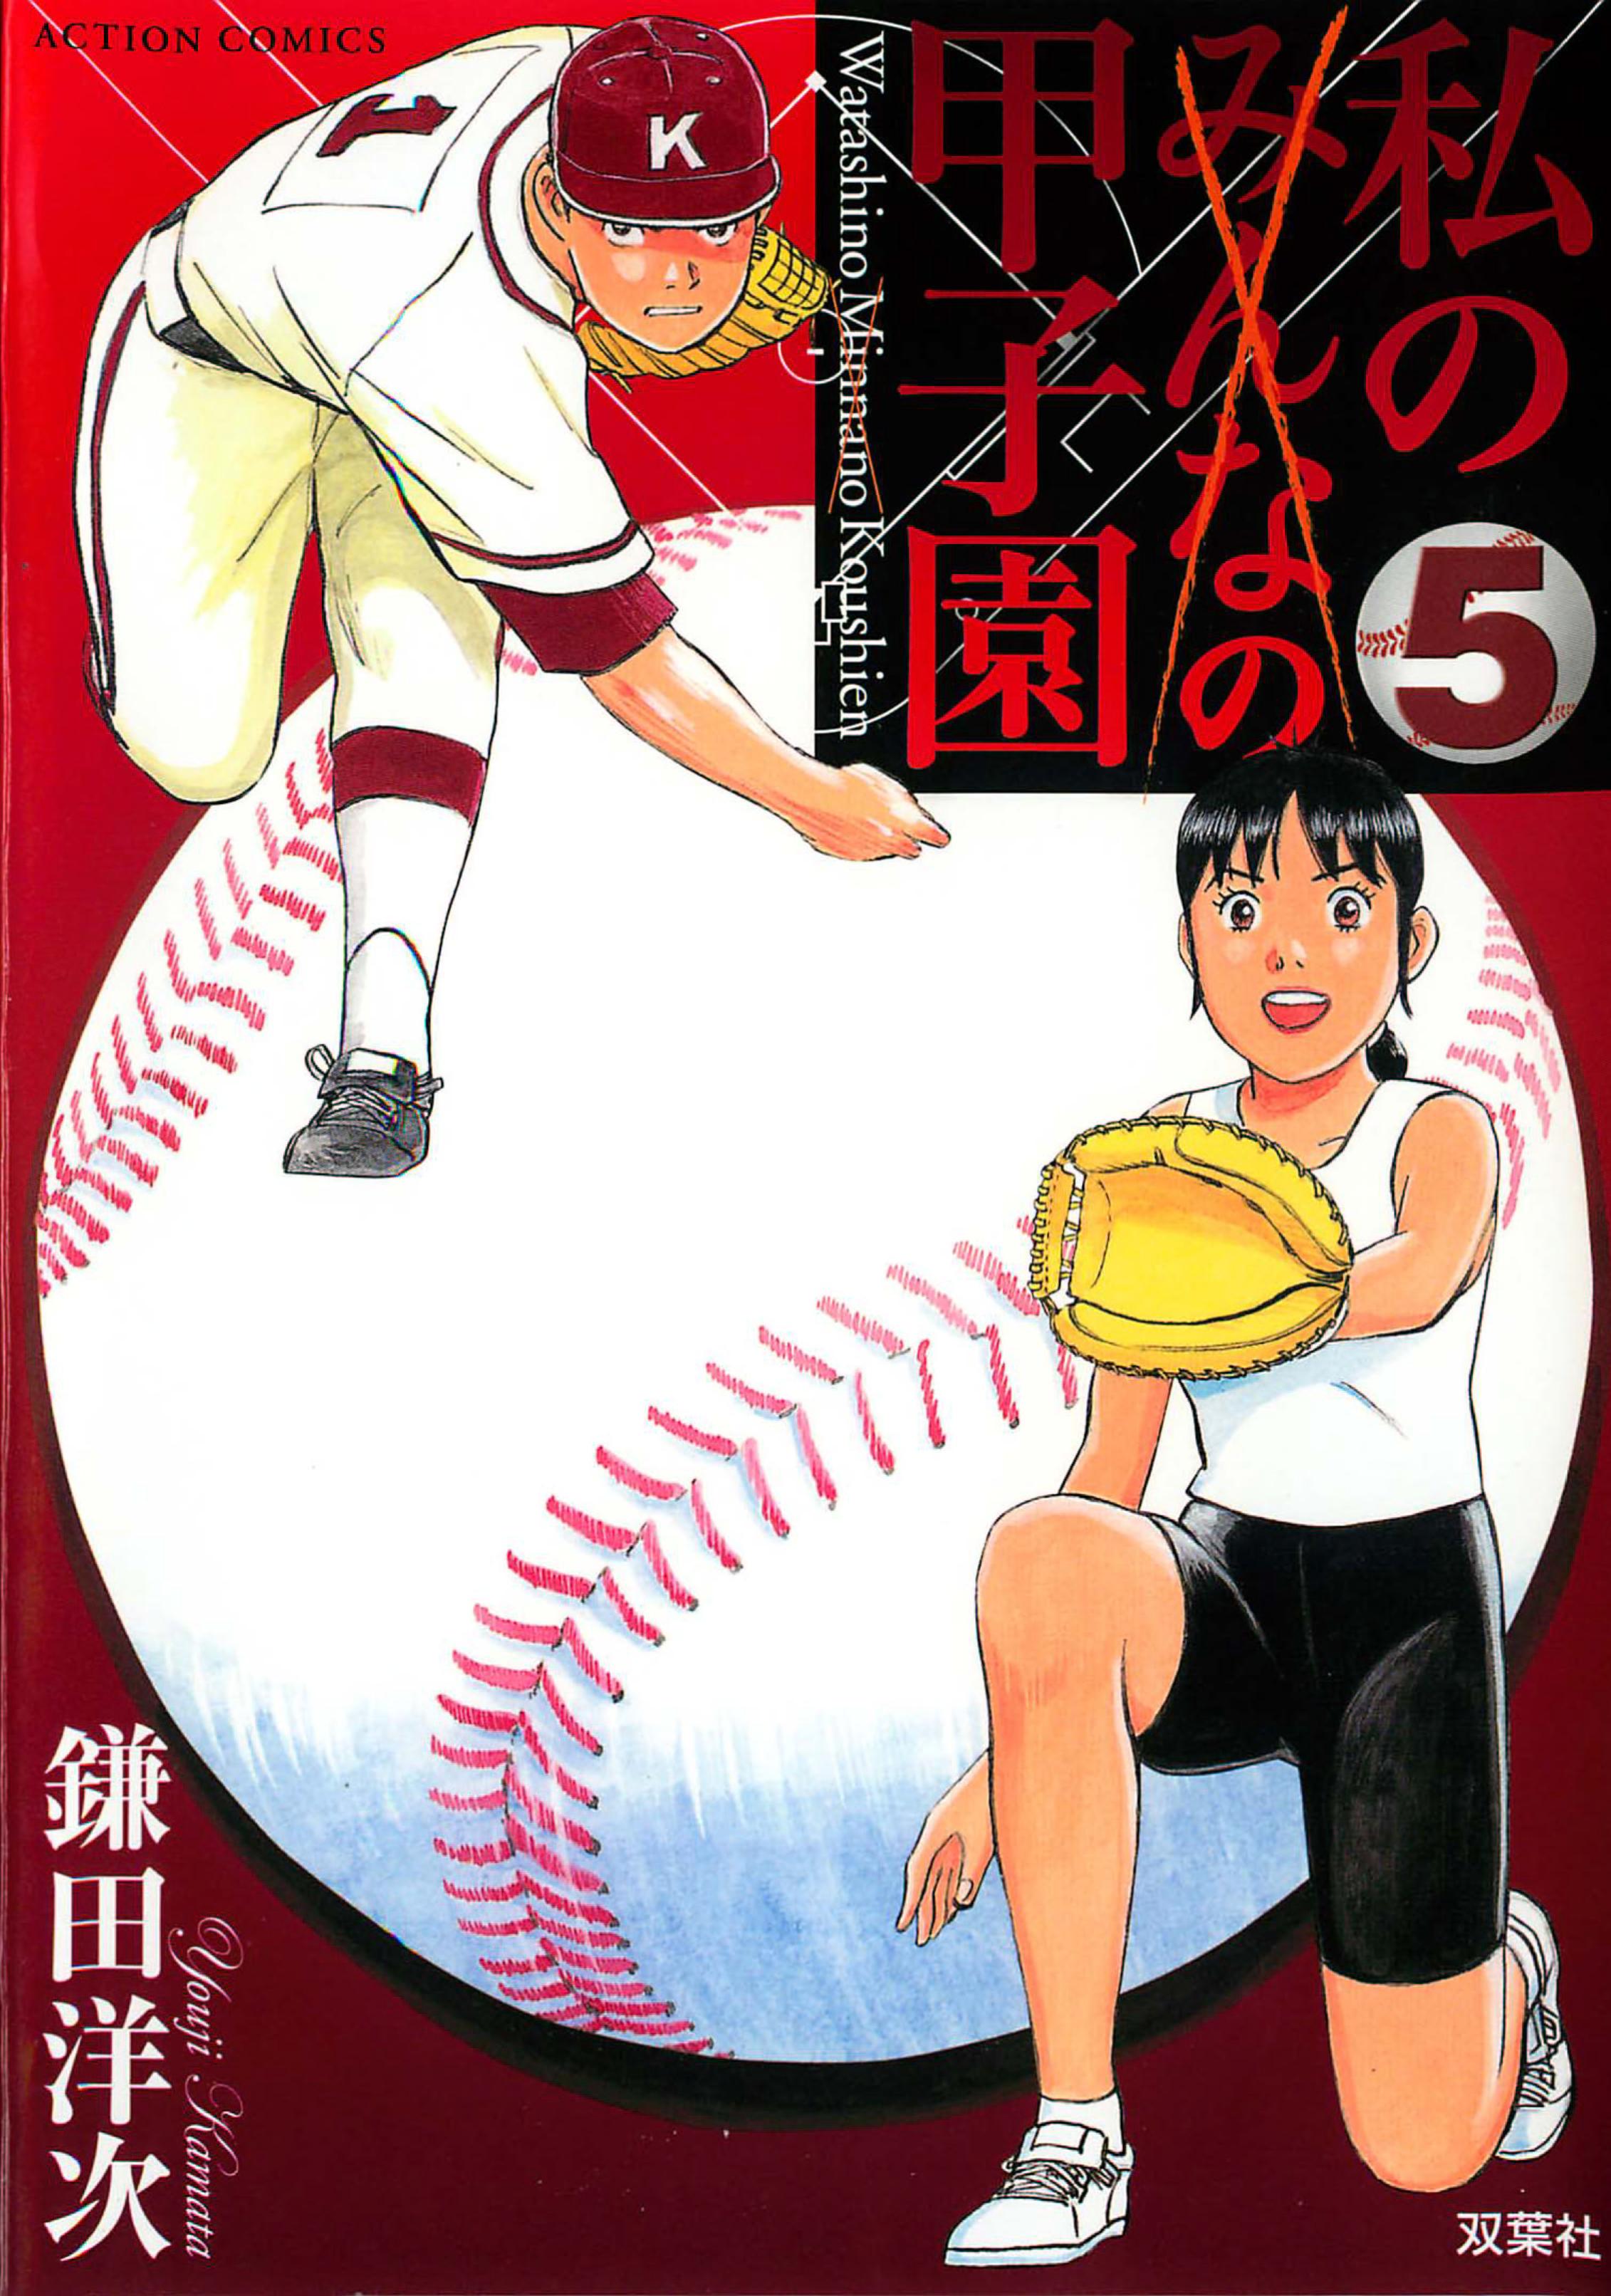 Watashi no Koshien volume 4 & 5 (skimmed)